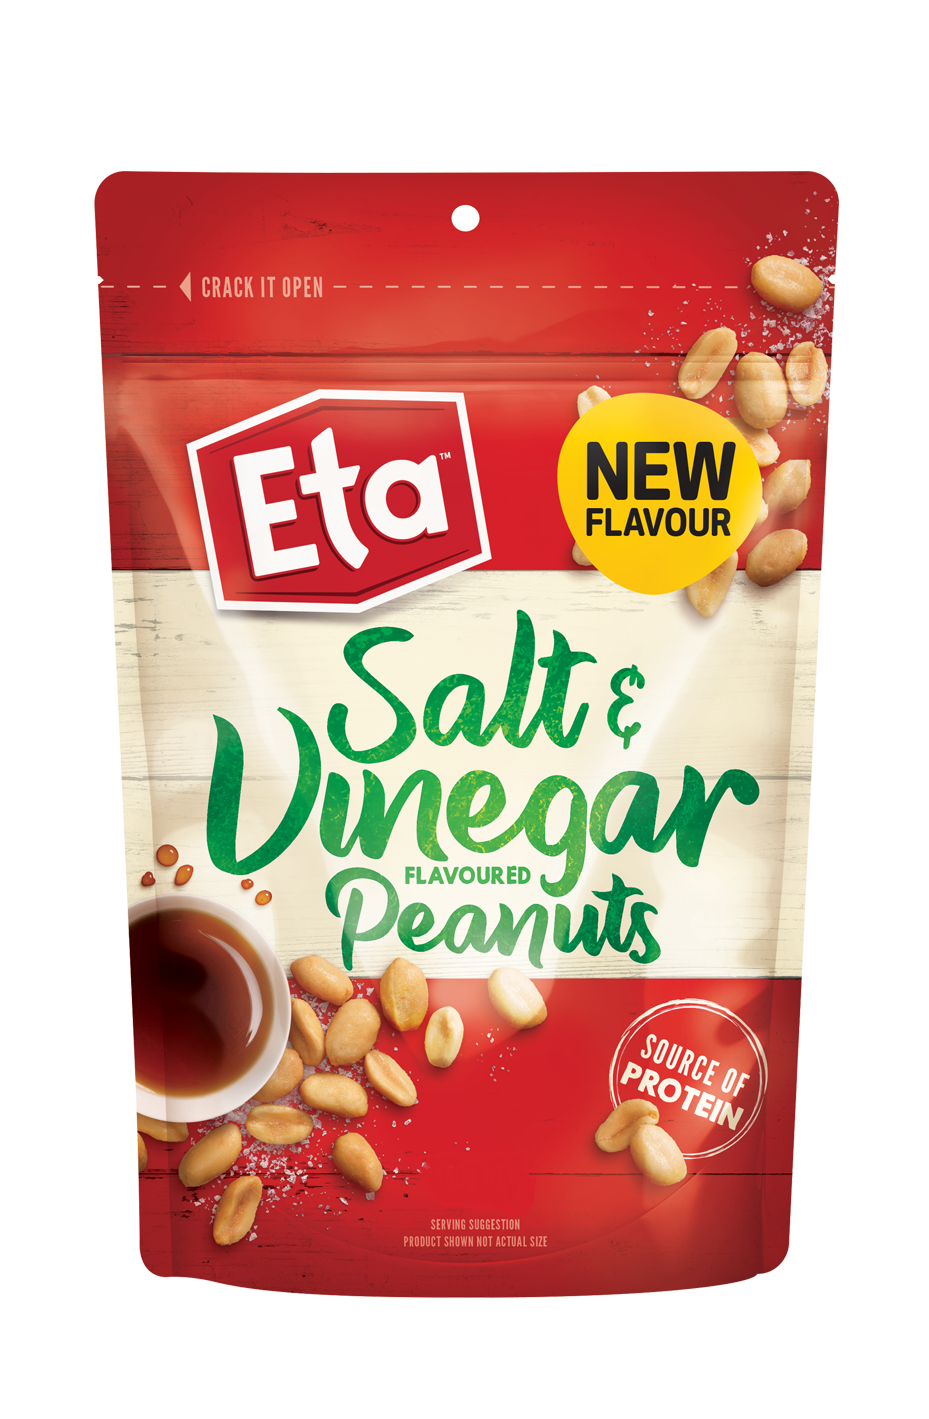 Eta Salt & Vinegar Peanuts Pouch 150g